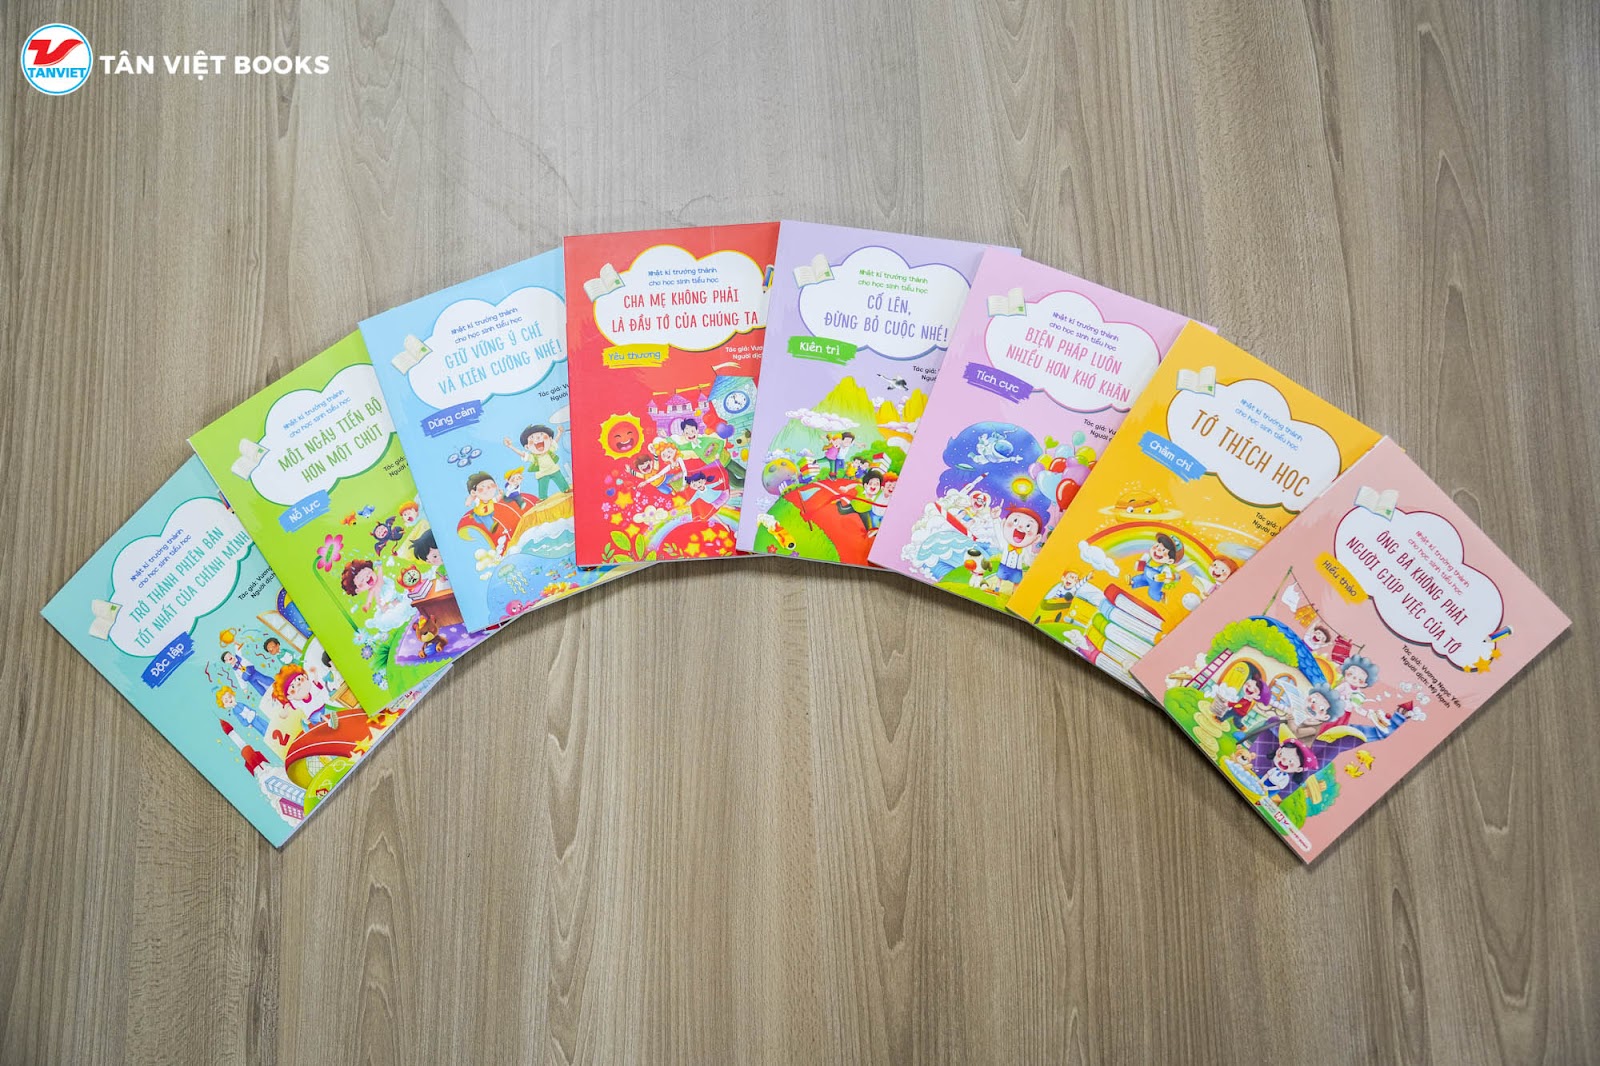 Bộ sách 8 cuốn “Nhật kí trưởng thành cho học sinh tiểu học”